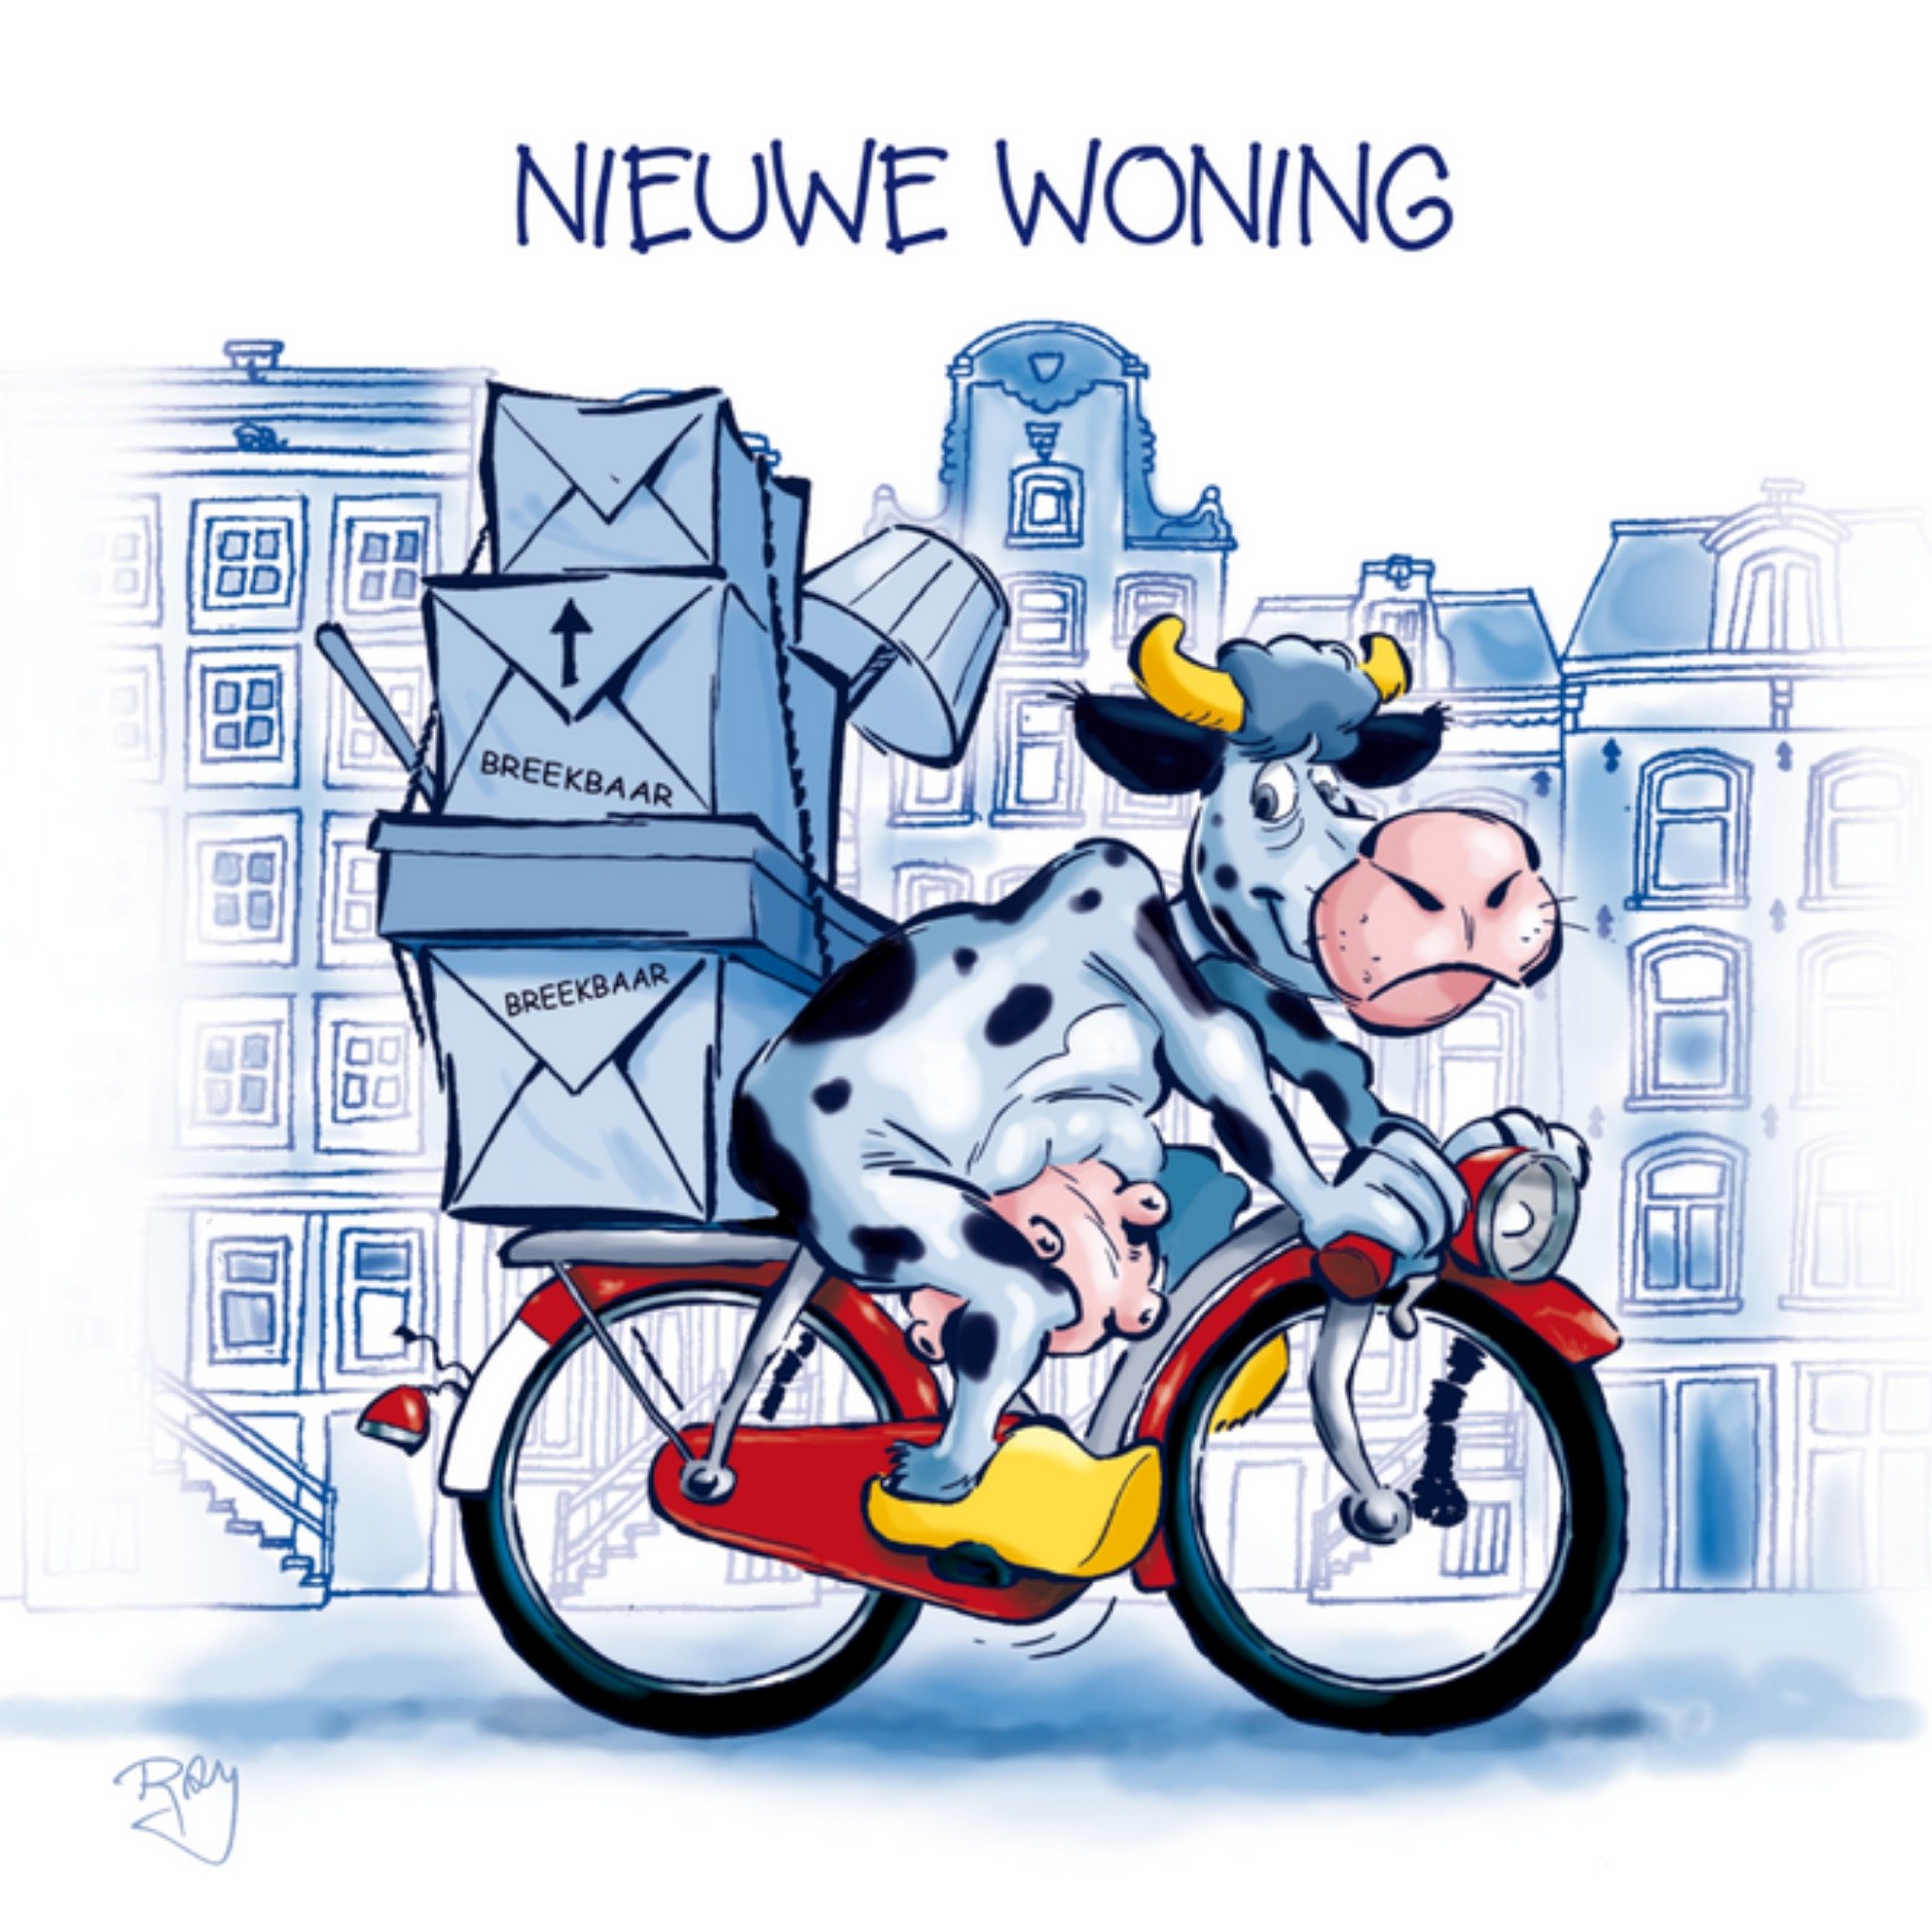 Old Dutch - Nieuwe woning - fiets - verhuizen 17